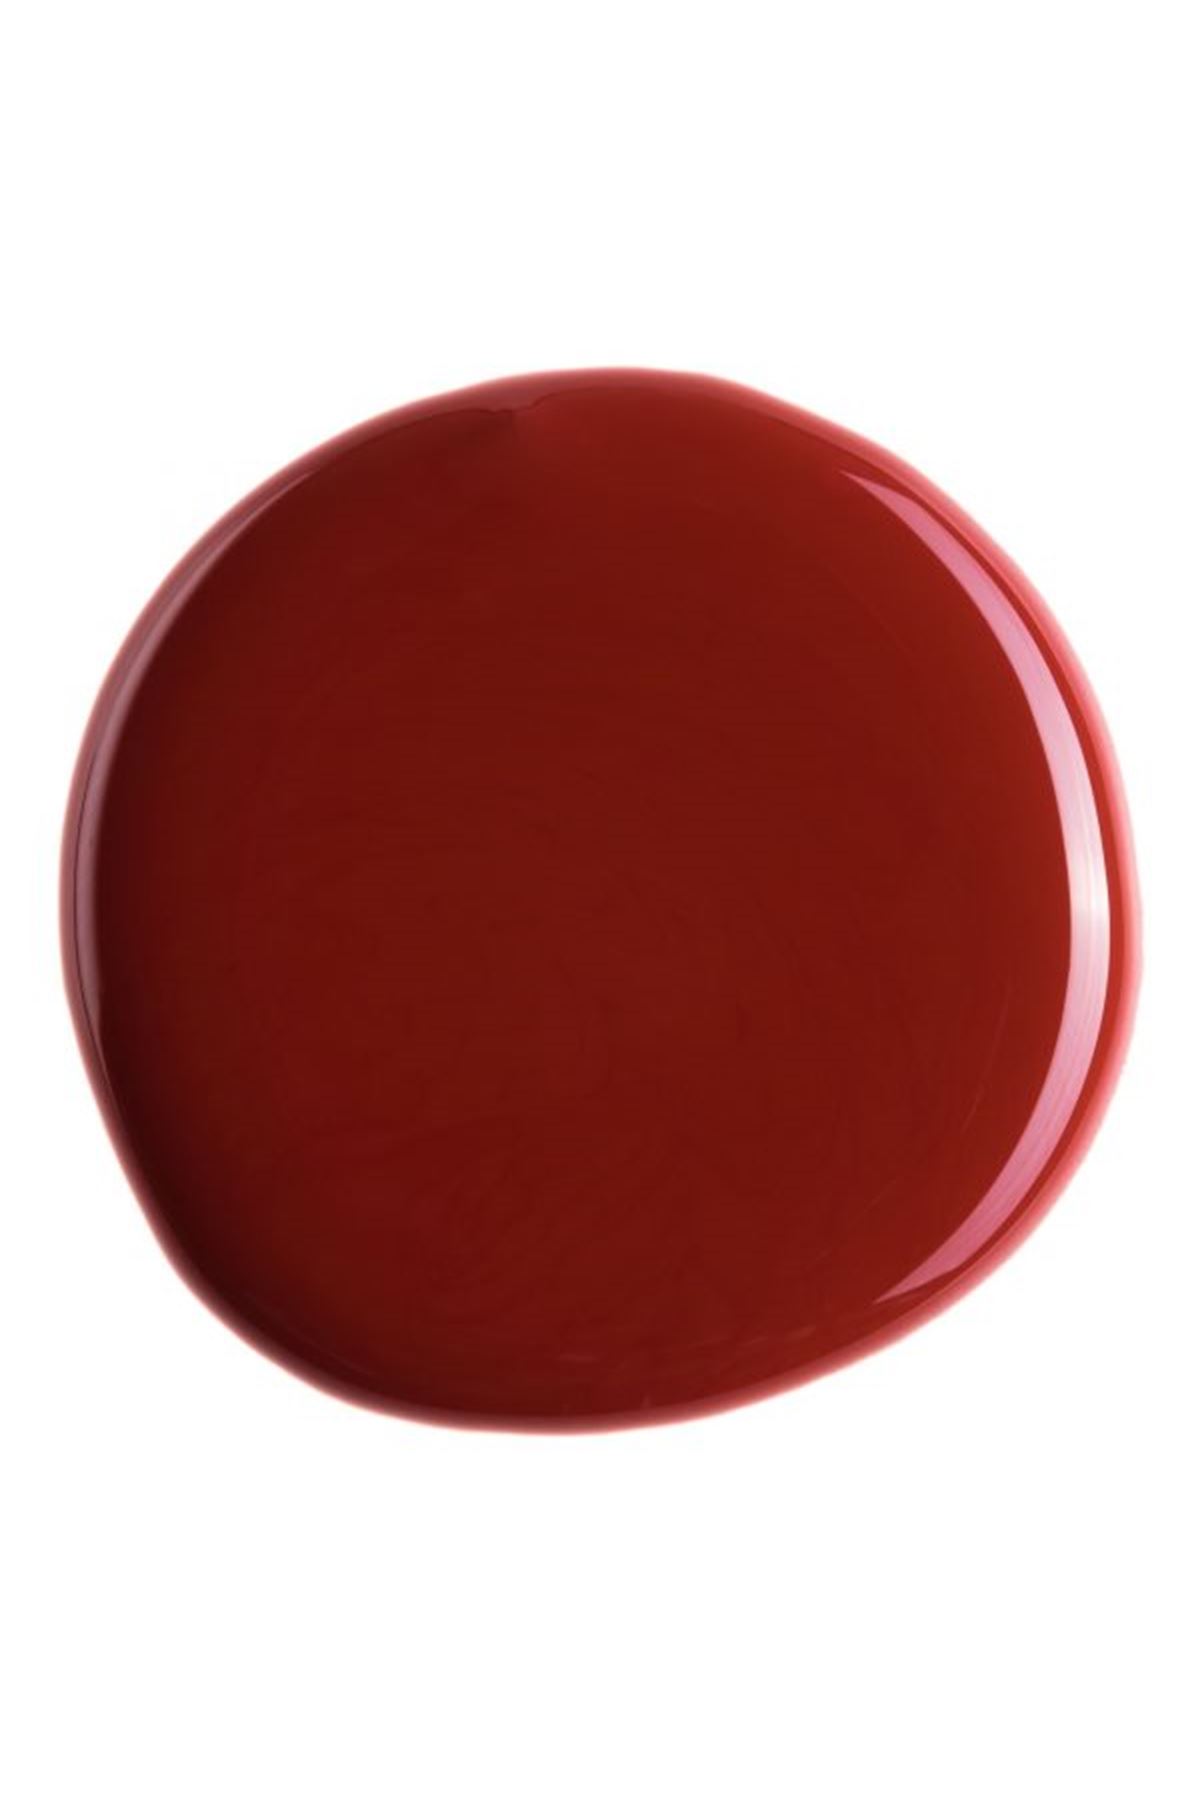 Brtr Kimya Kırmızı Pigment Pasta 20 gr - Köpük Efekti -Akrilik Pouring 